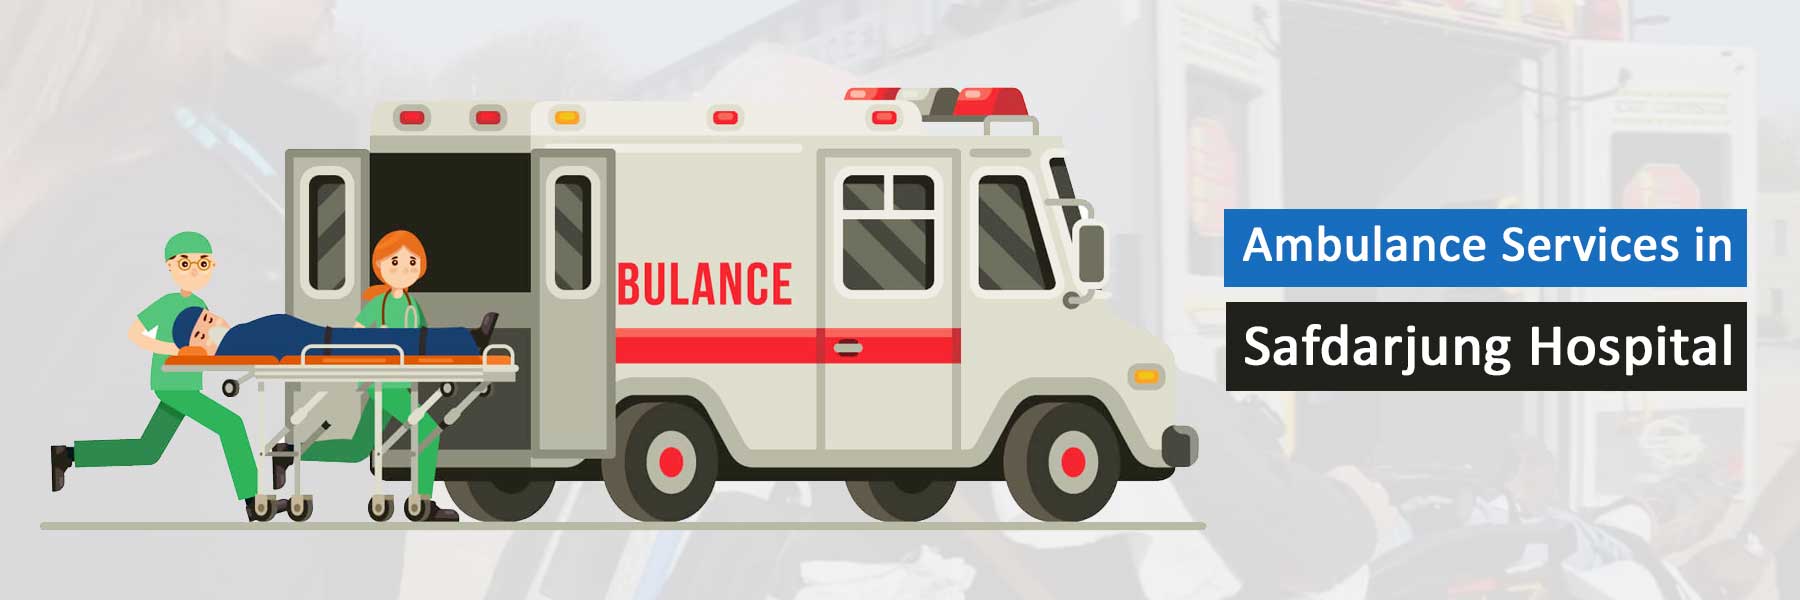 Ambulance Services in Safdarjung Hospital